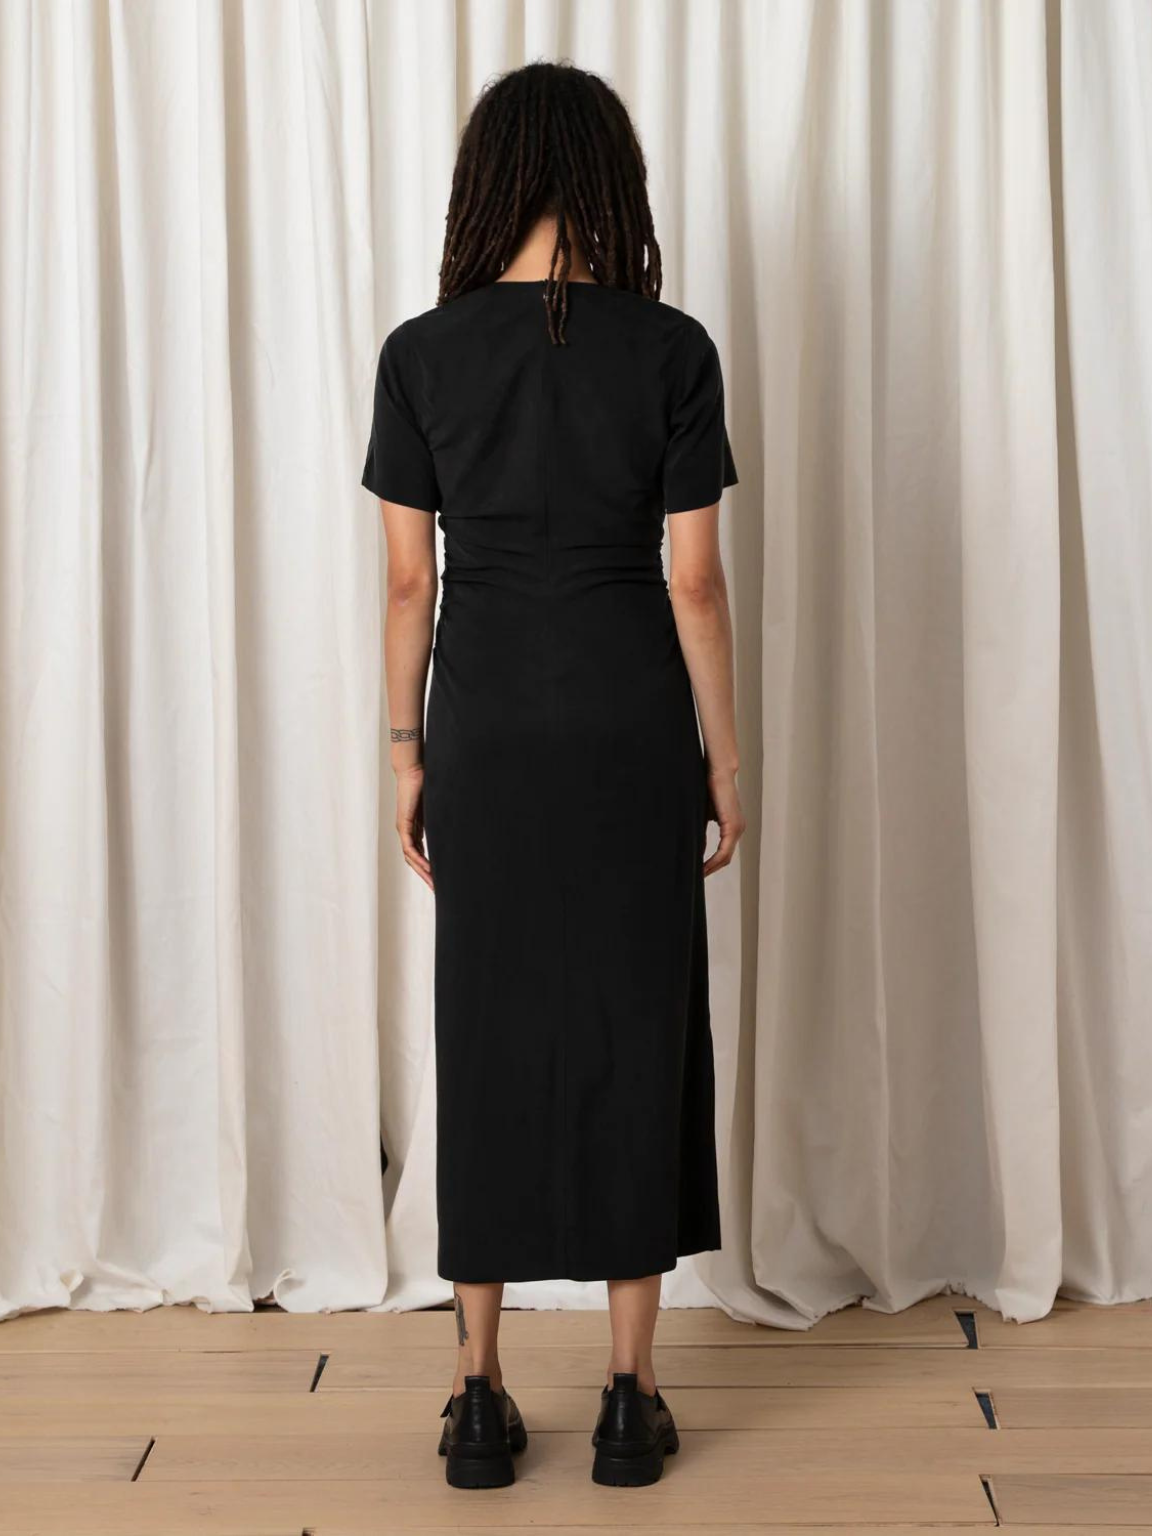 Side Ruched Form Dress - Black